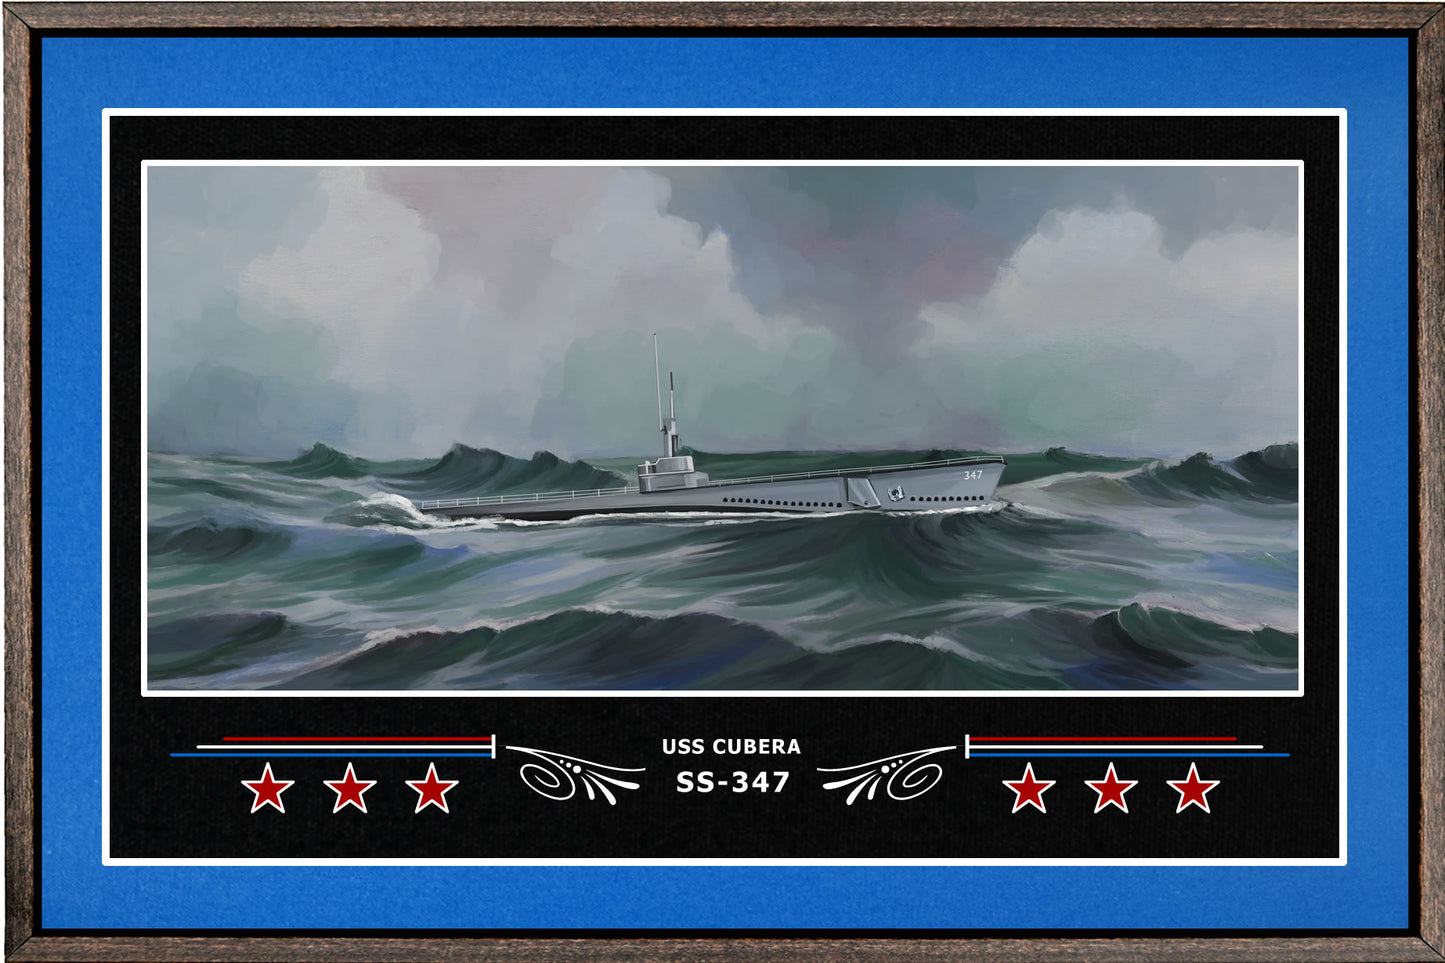 USS CUBERA SS 347 BOX FRAMED CANVAS ART BLUE